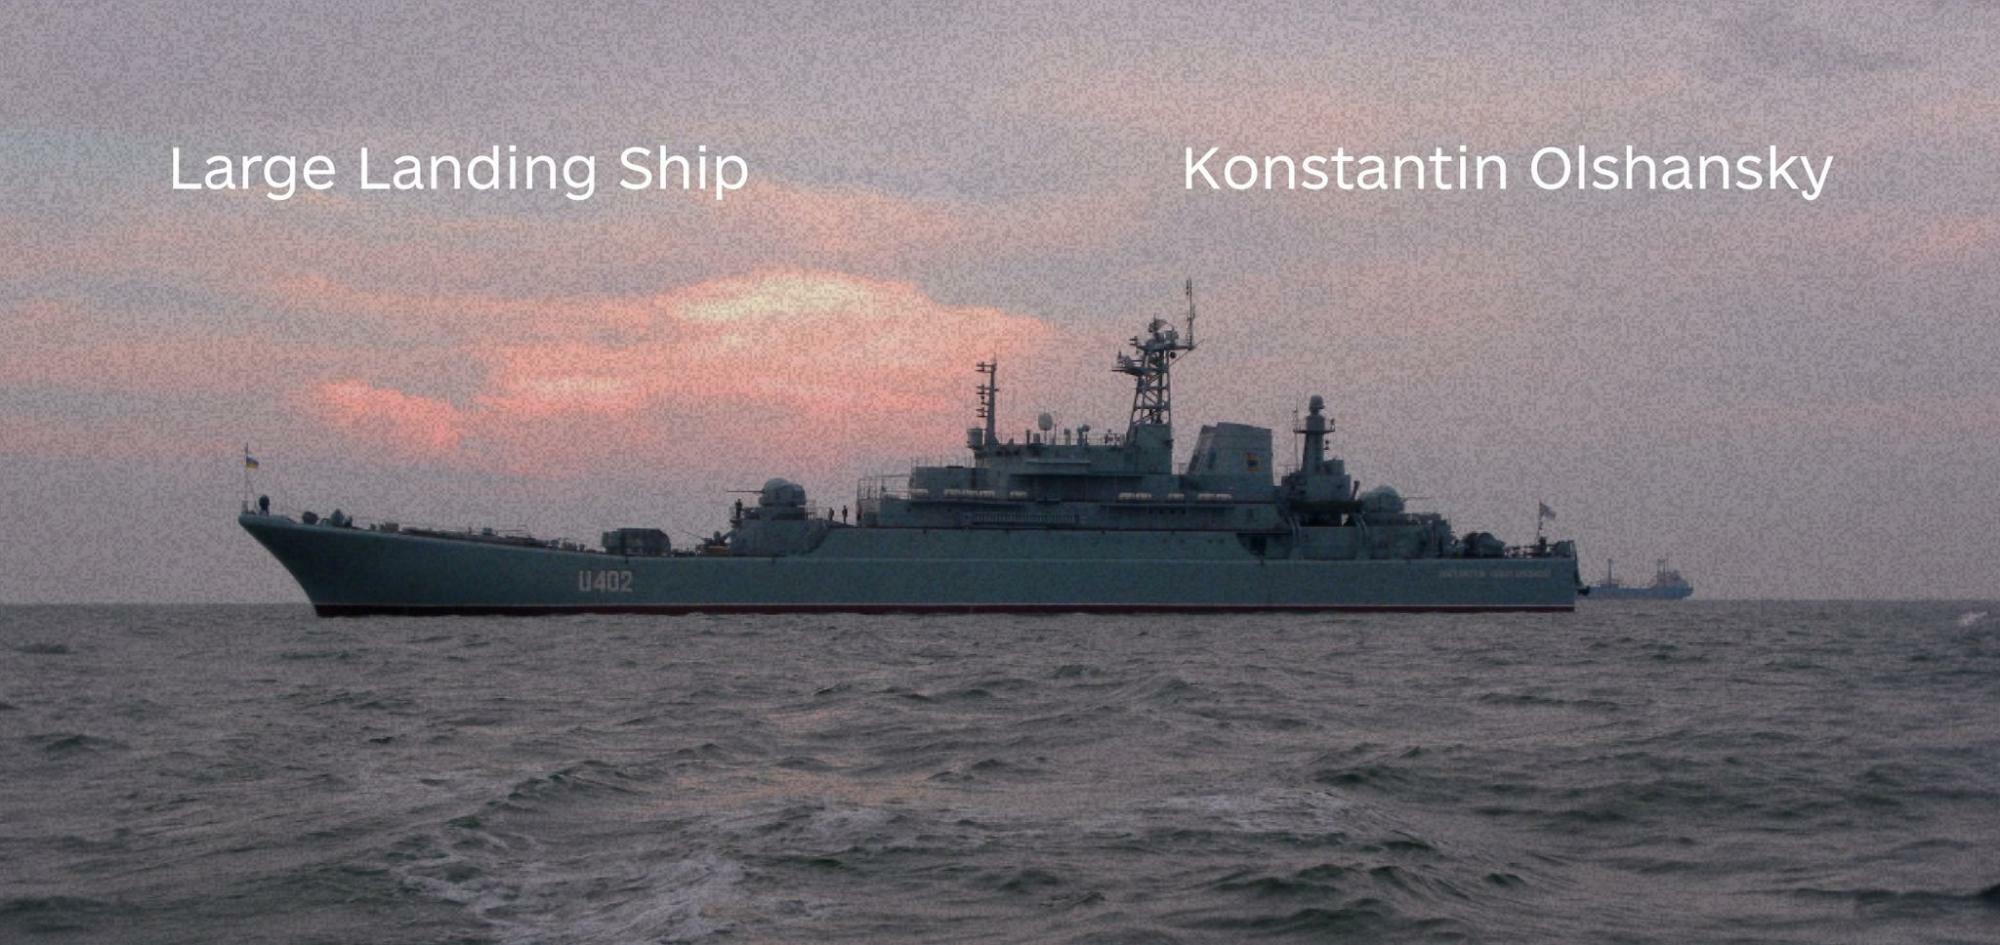 ウクライナ国防省より大型揚陸艦「コンスタンチン・オリシャンスキー」、艦番号U402